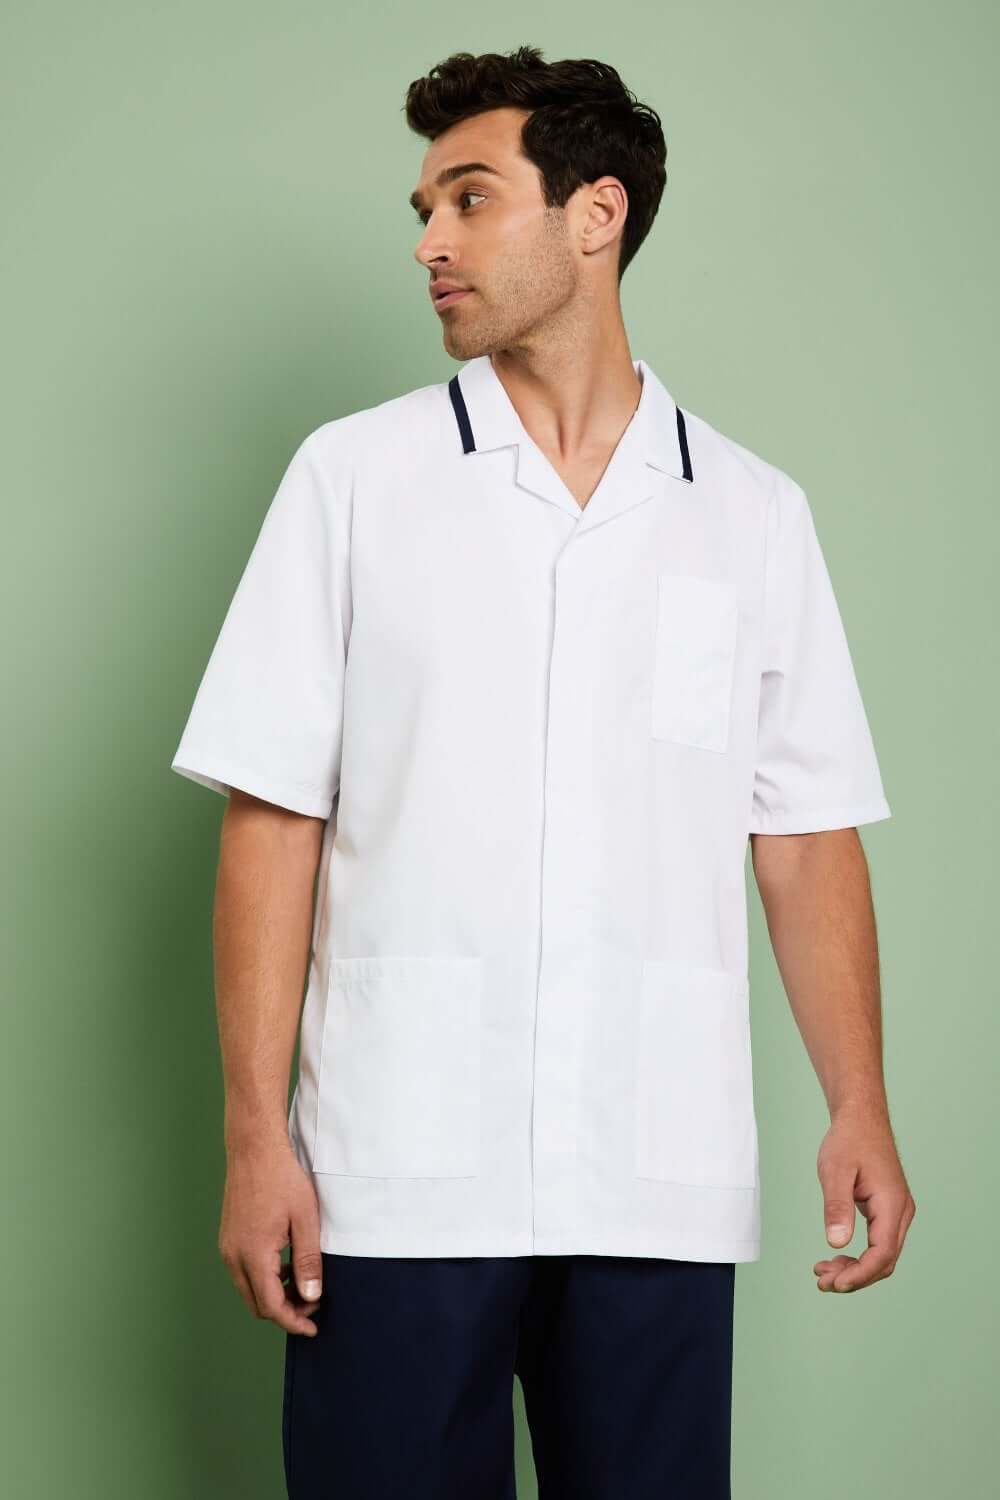 Mens Classic Healthcare tunic White - Simon Jersey